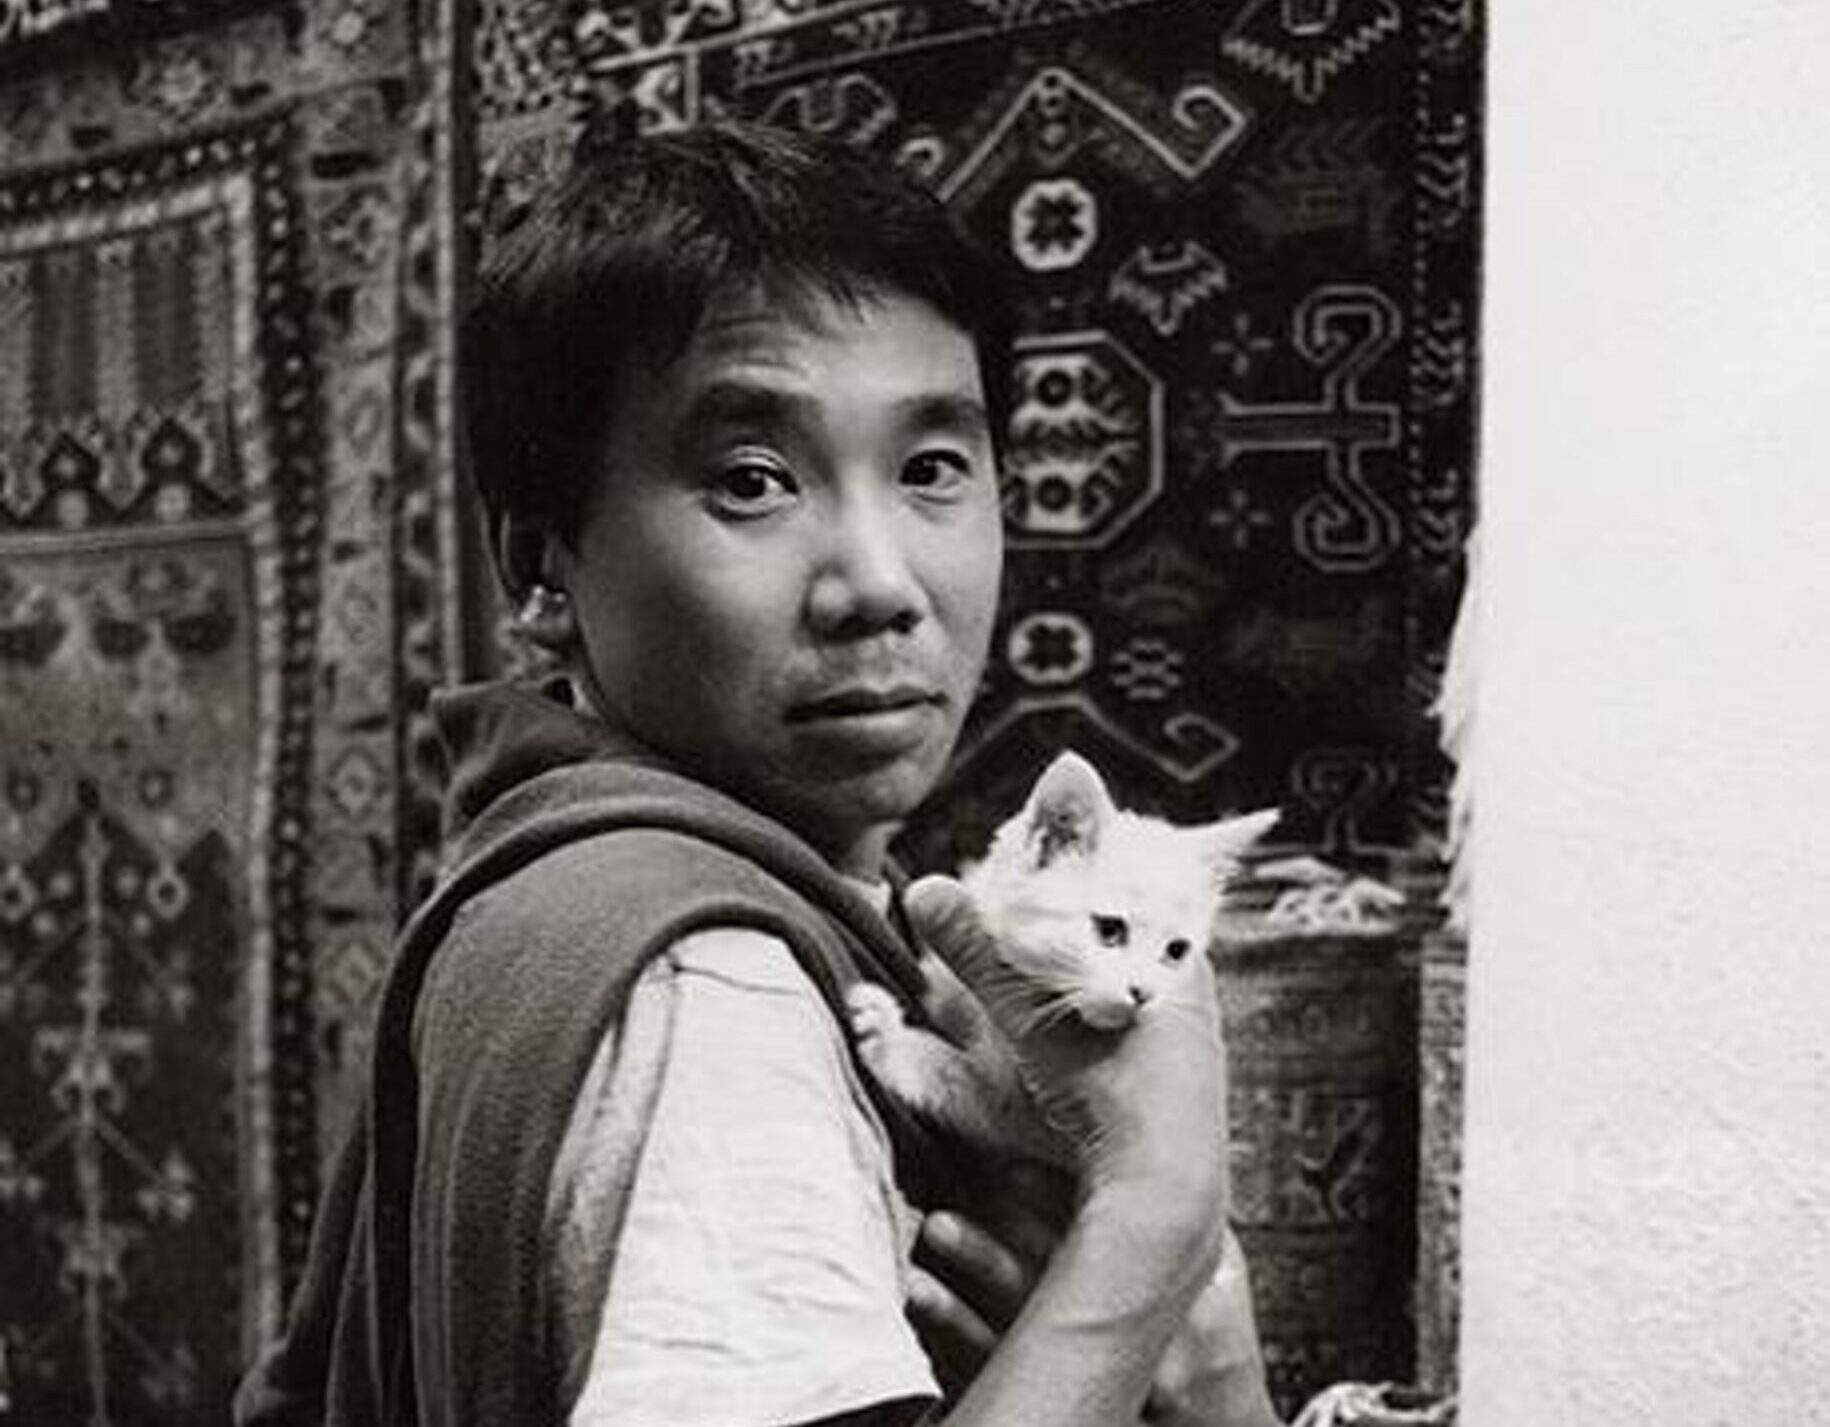 “Una ferita profonda nel suo cuore di bambino”. Murakami Haruki, i gatti, i segreti del padre